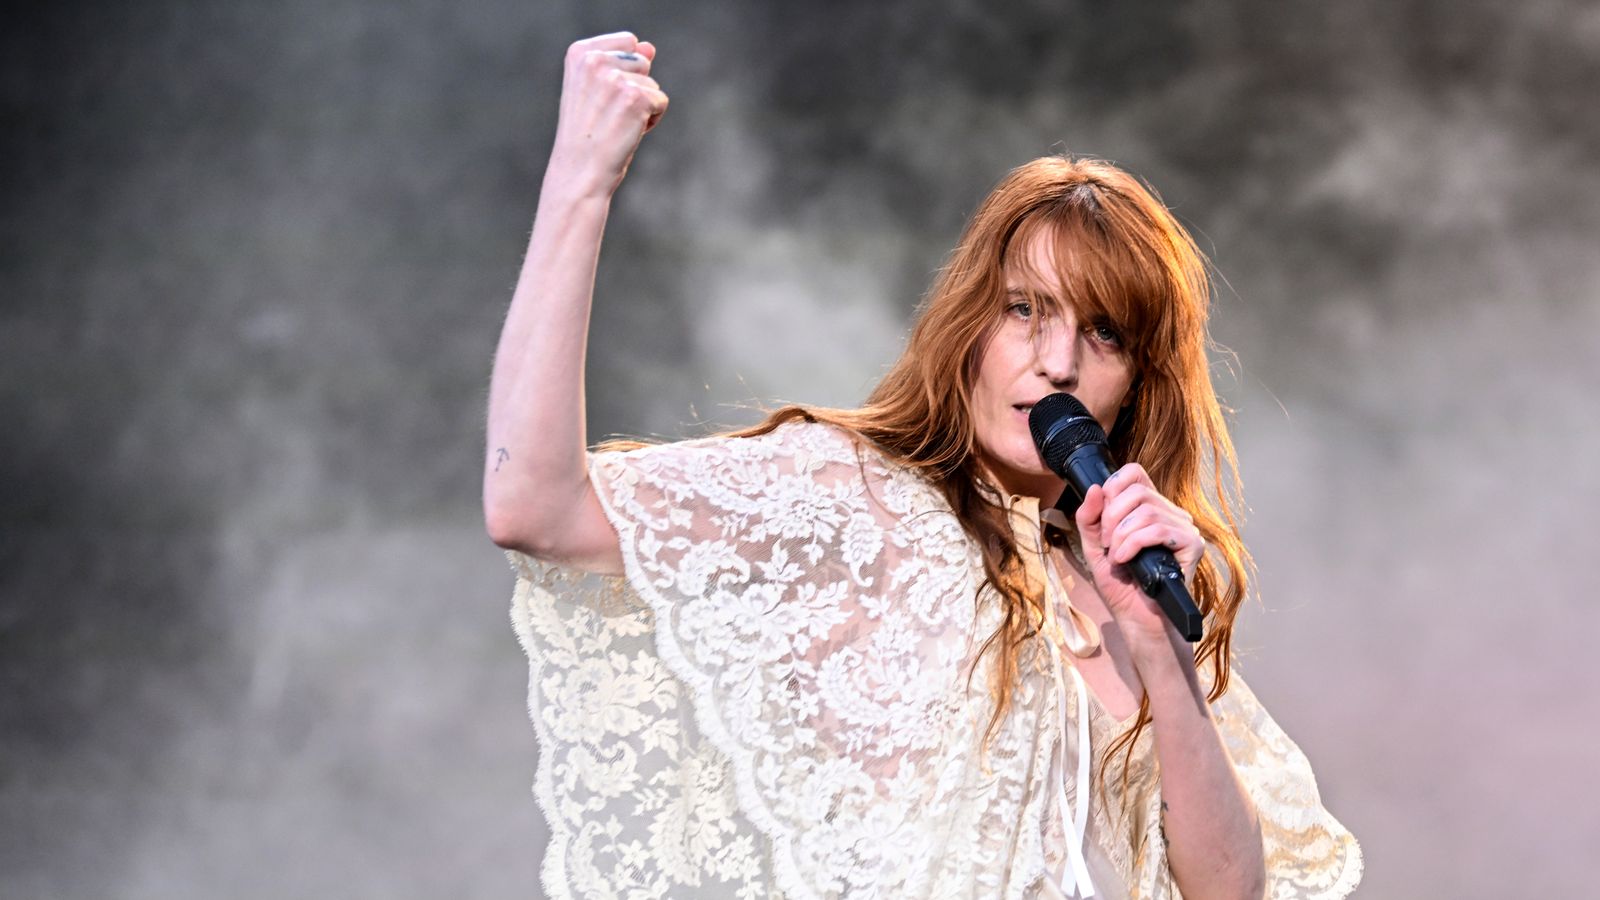 Wokalista Florence and the Machine przechodzi „ratującą życie” operację po odwołaniu koncertu |  Wiadomości o sztuce i sztuce